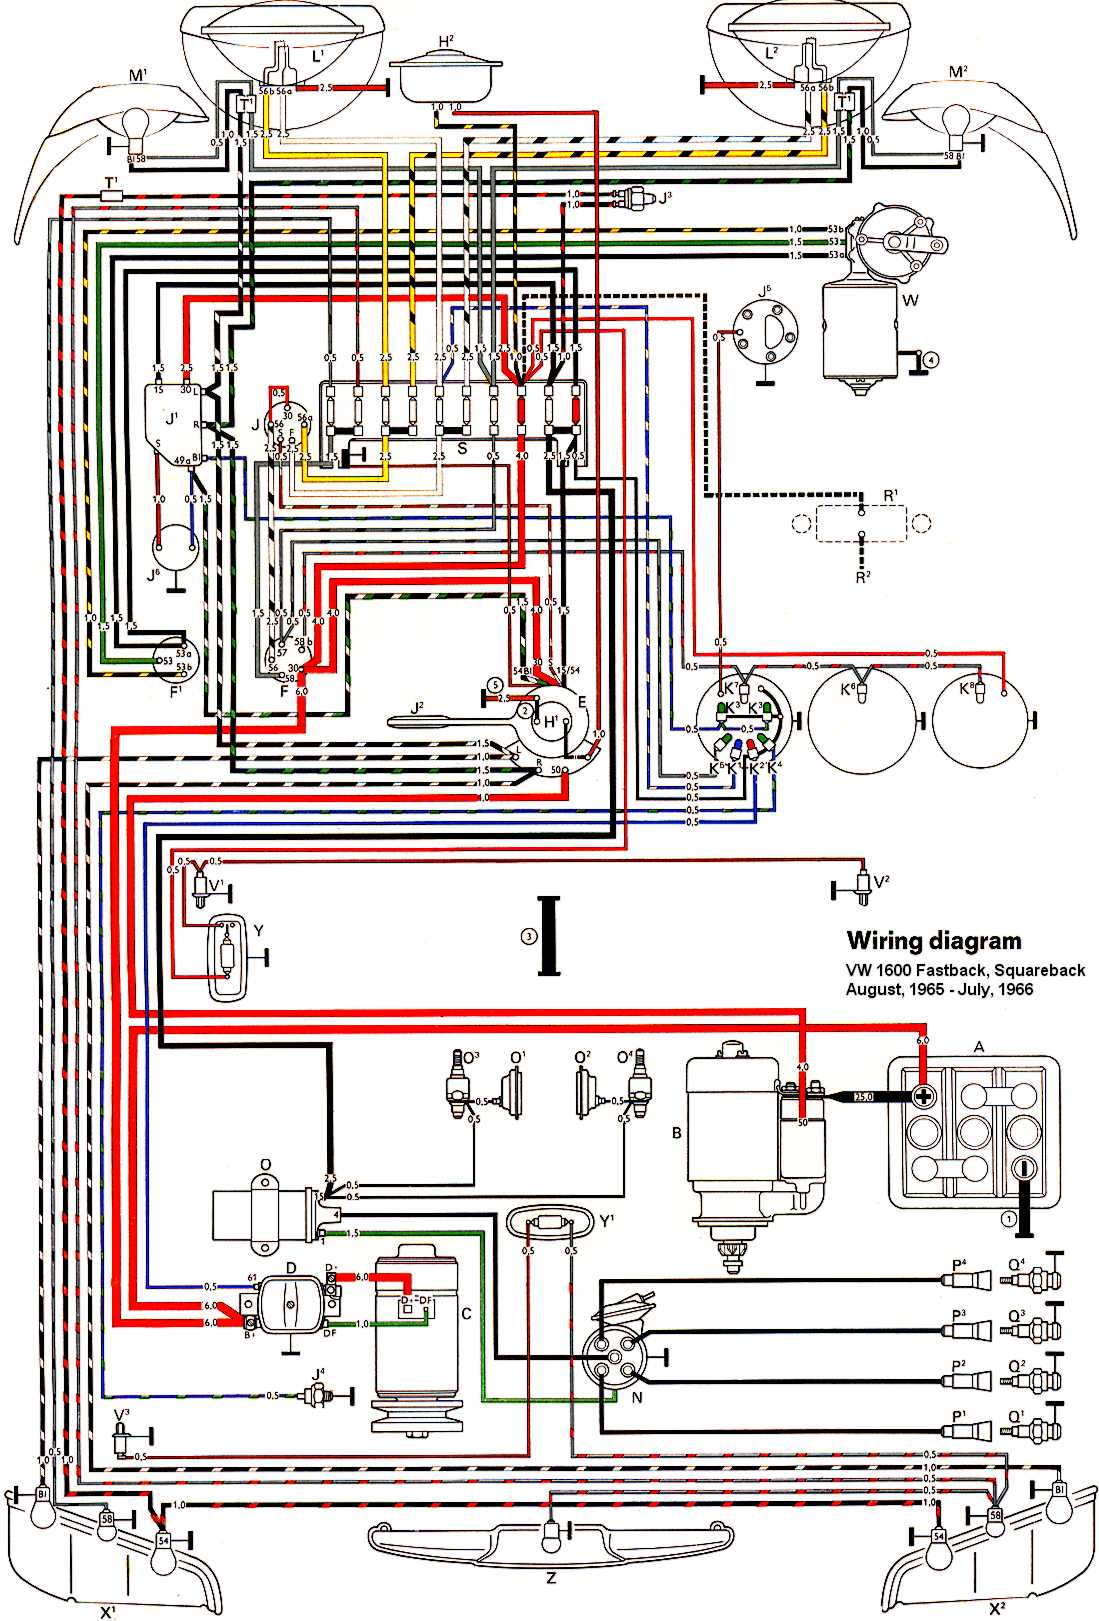 1966 vw speedometer wiring diagram